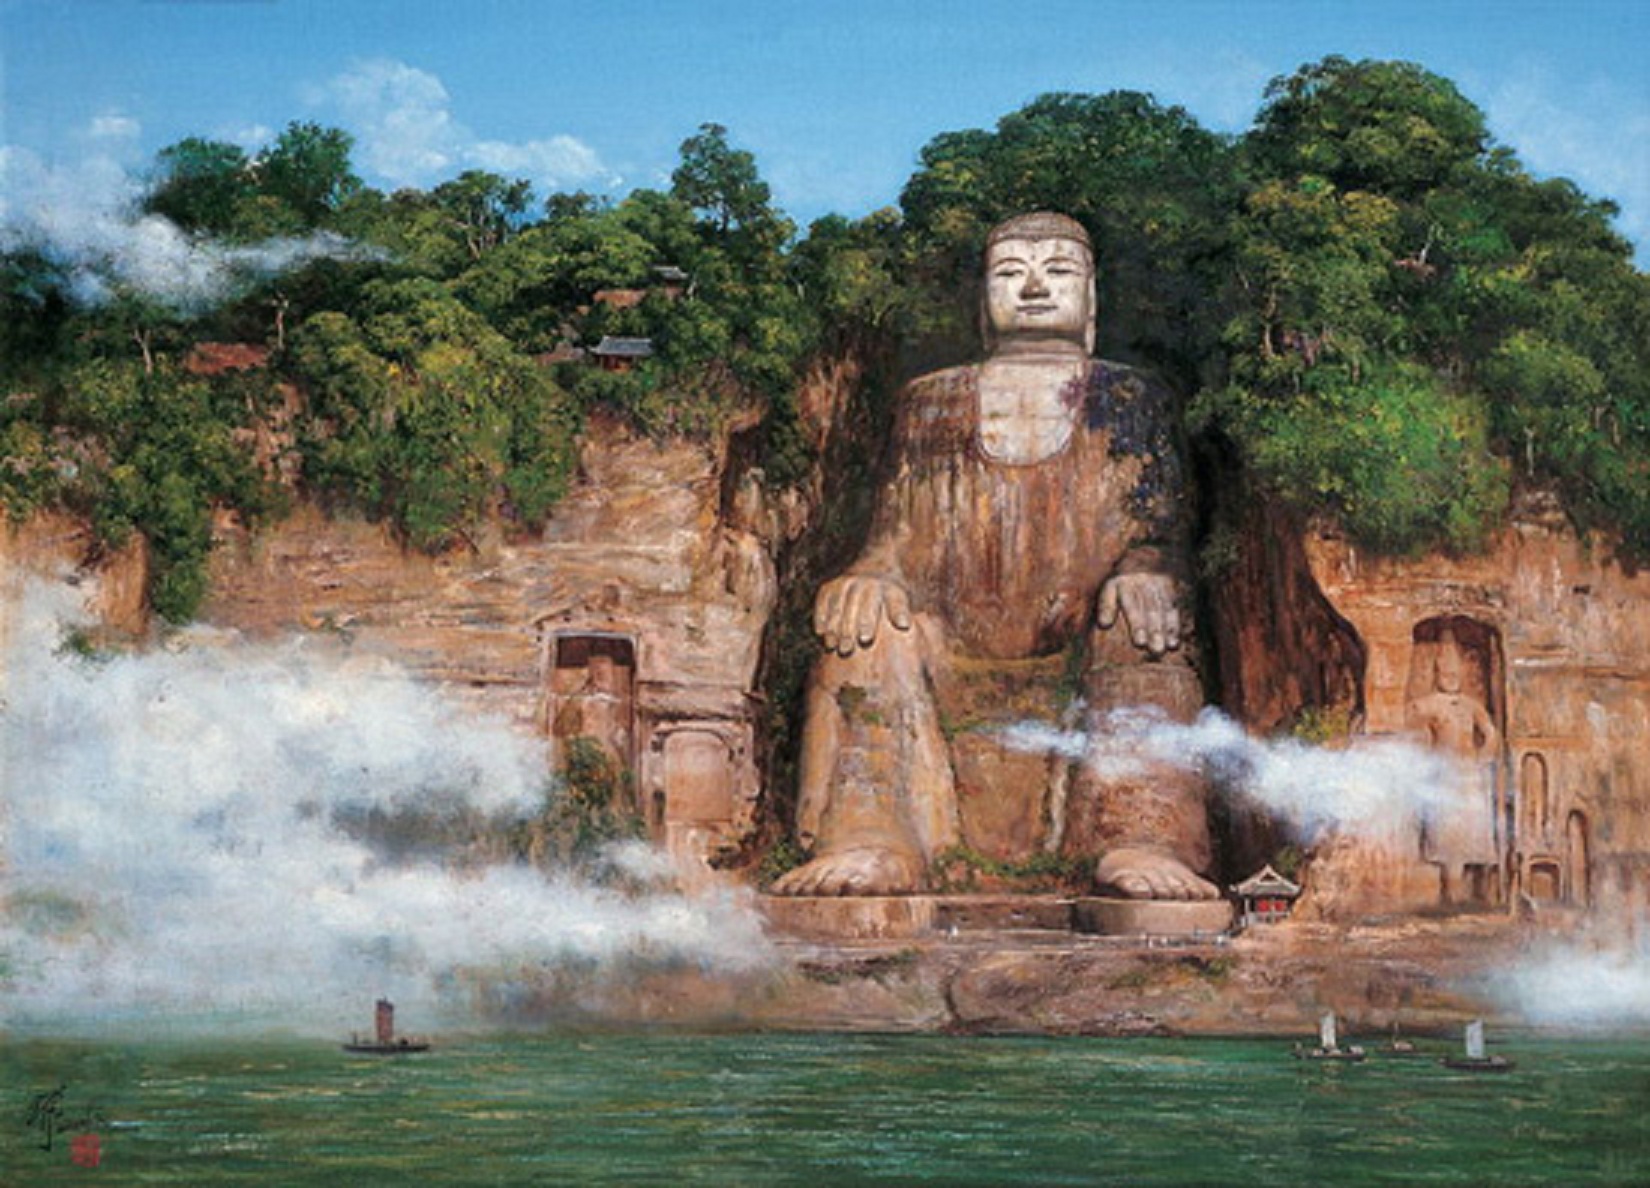 Leshan Giant Buddha - China - Historical